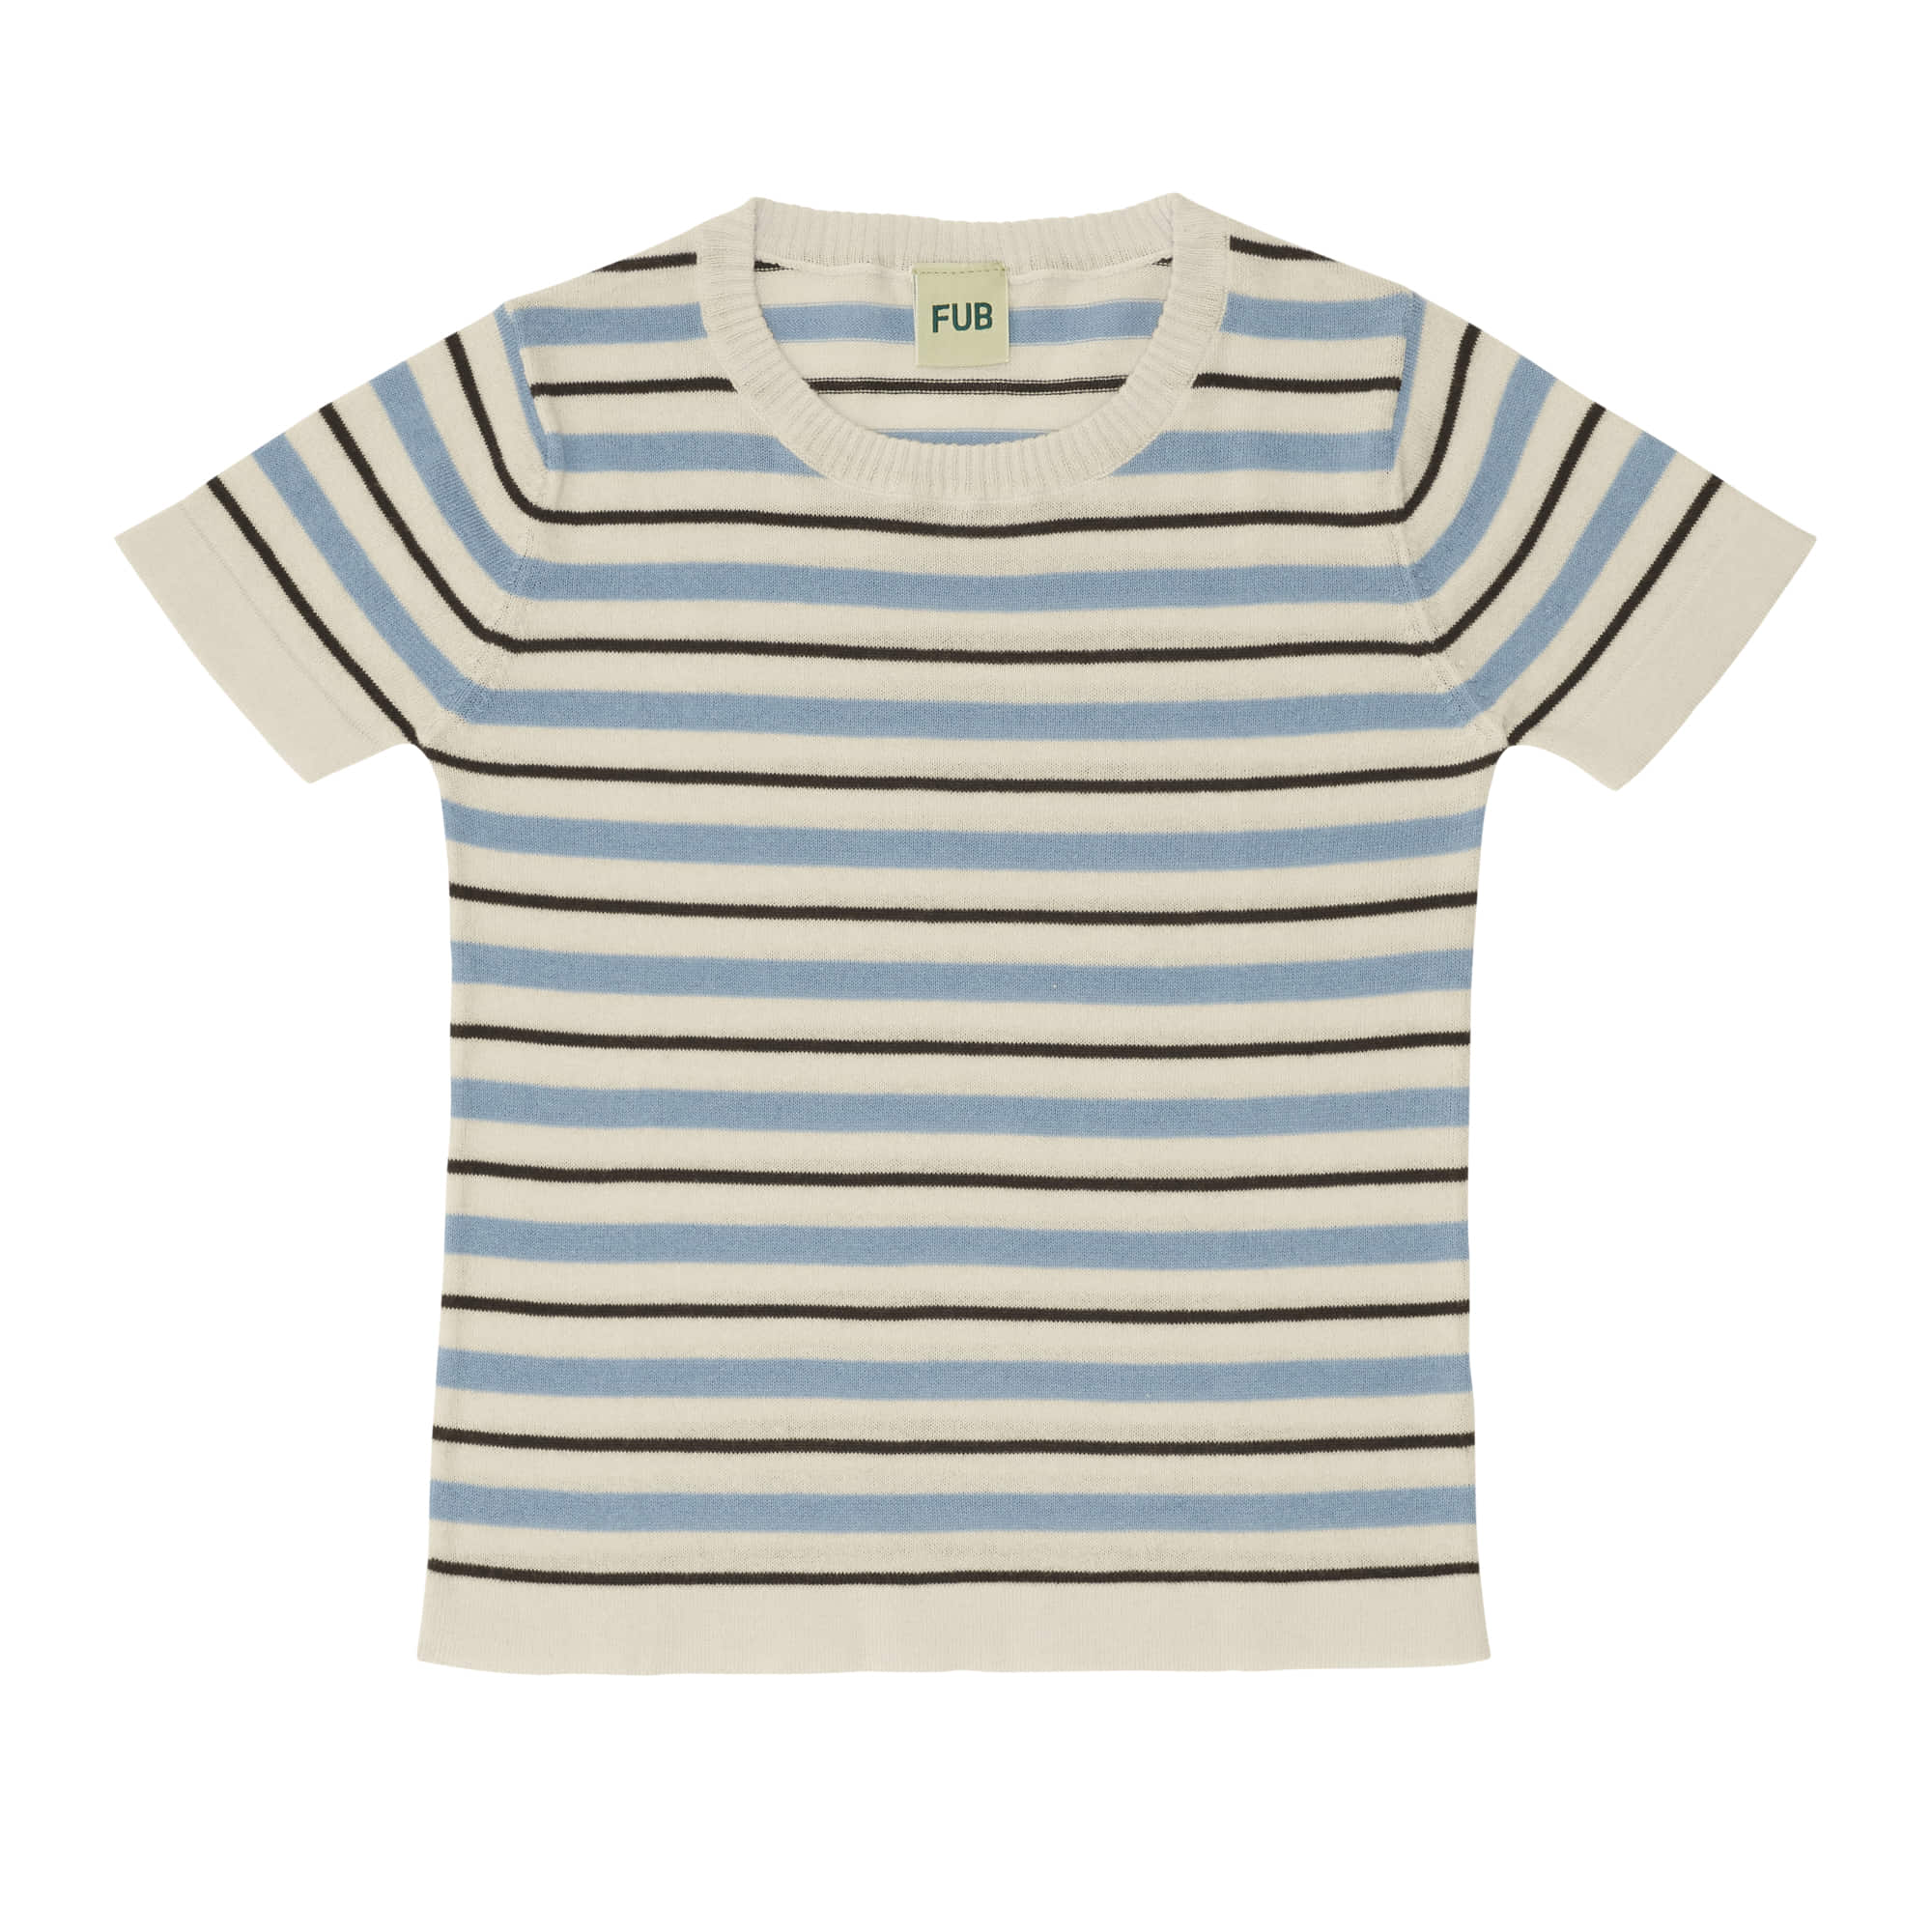 [FUB] Striped T-shirt ecru/cloudy blue